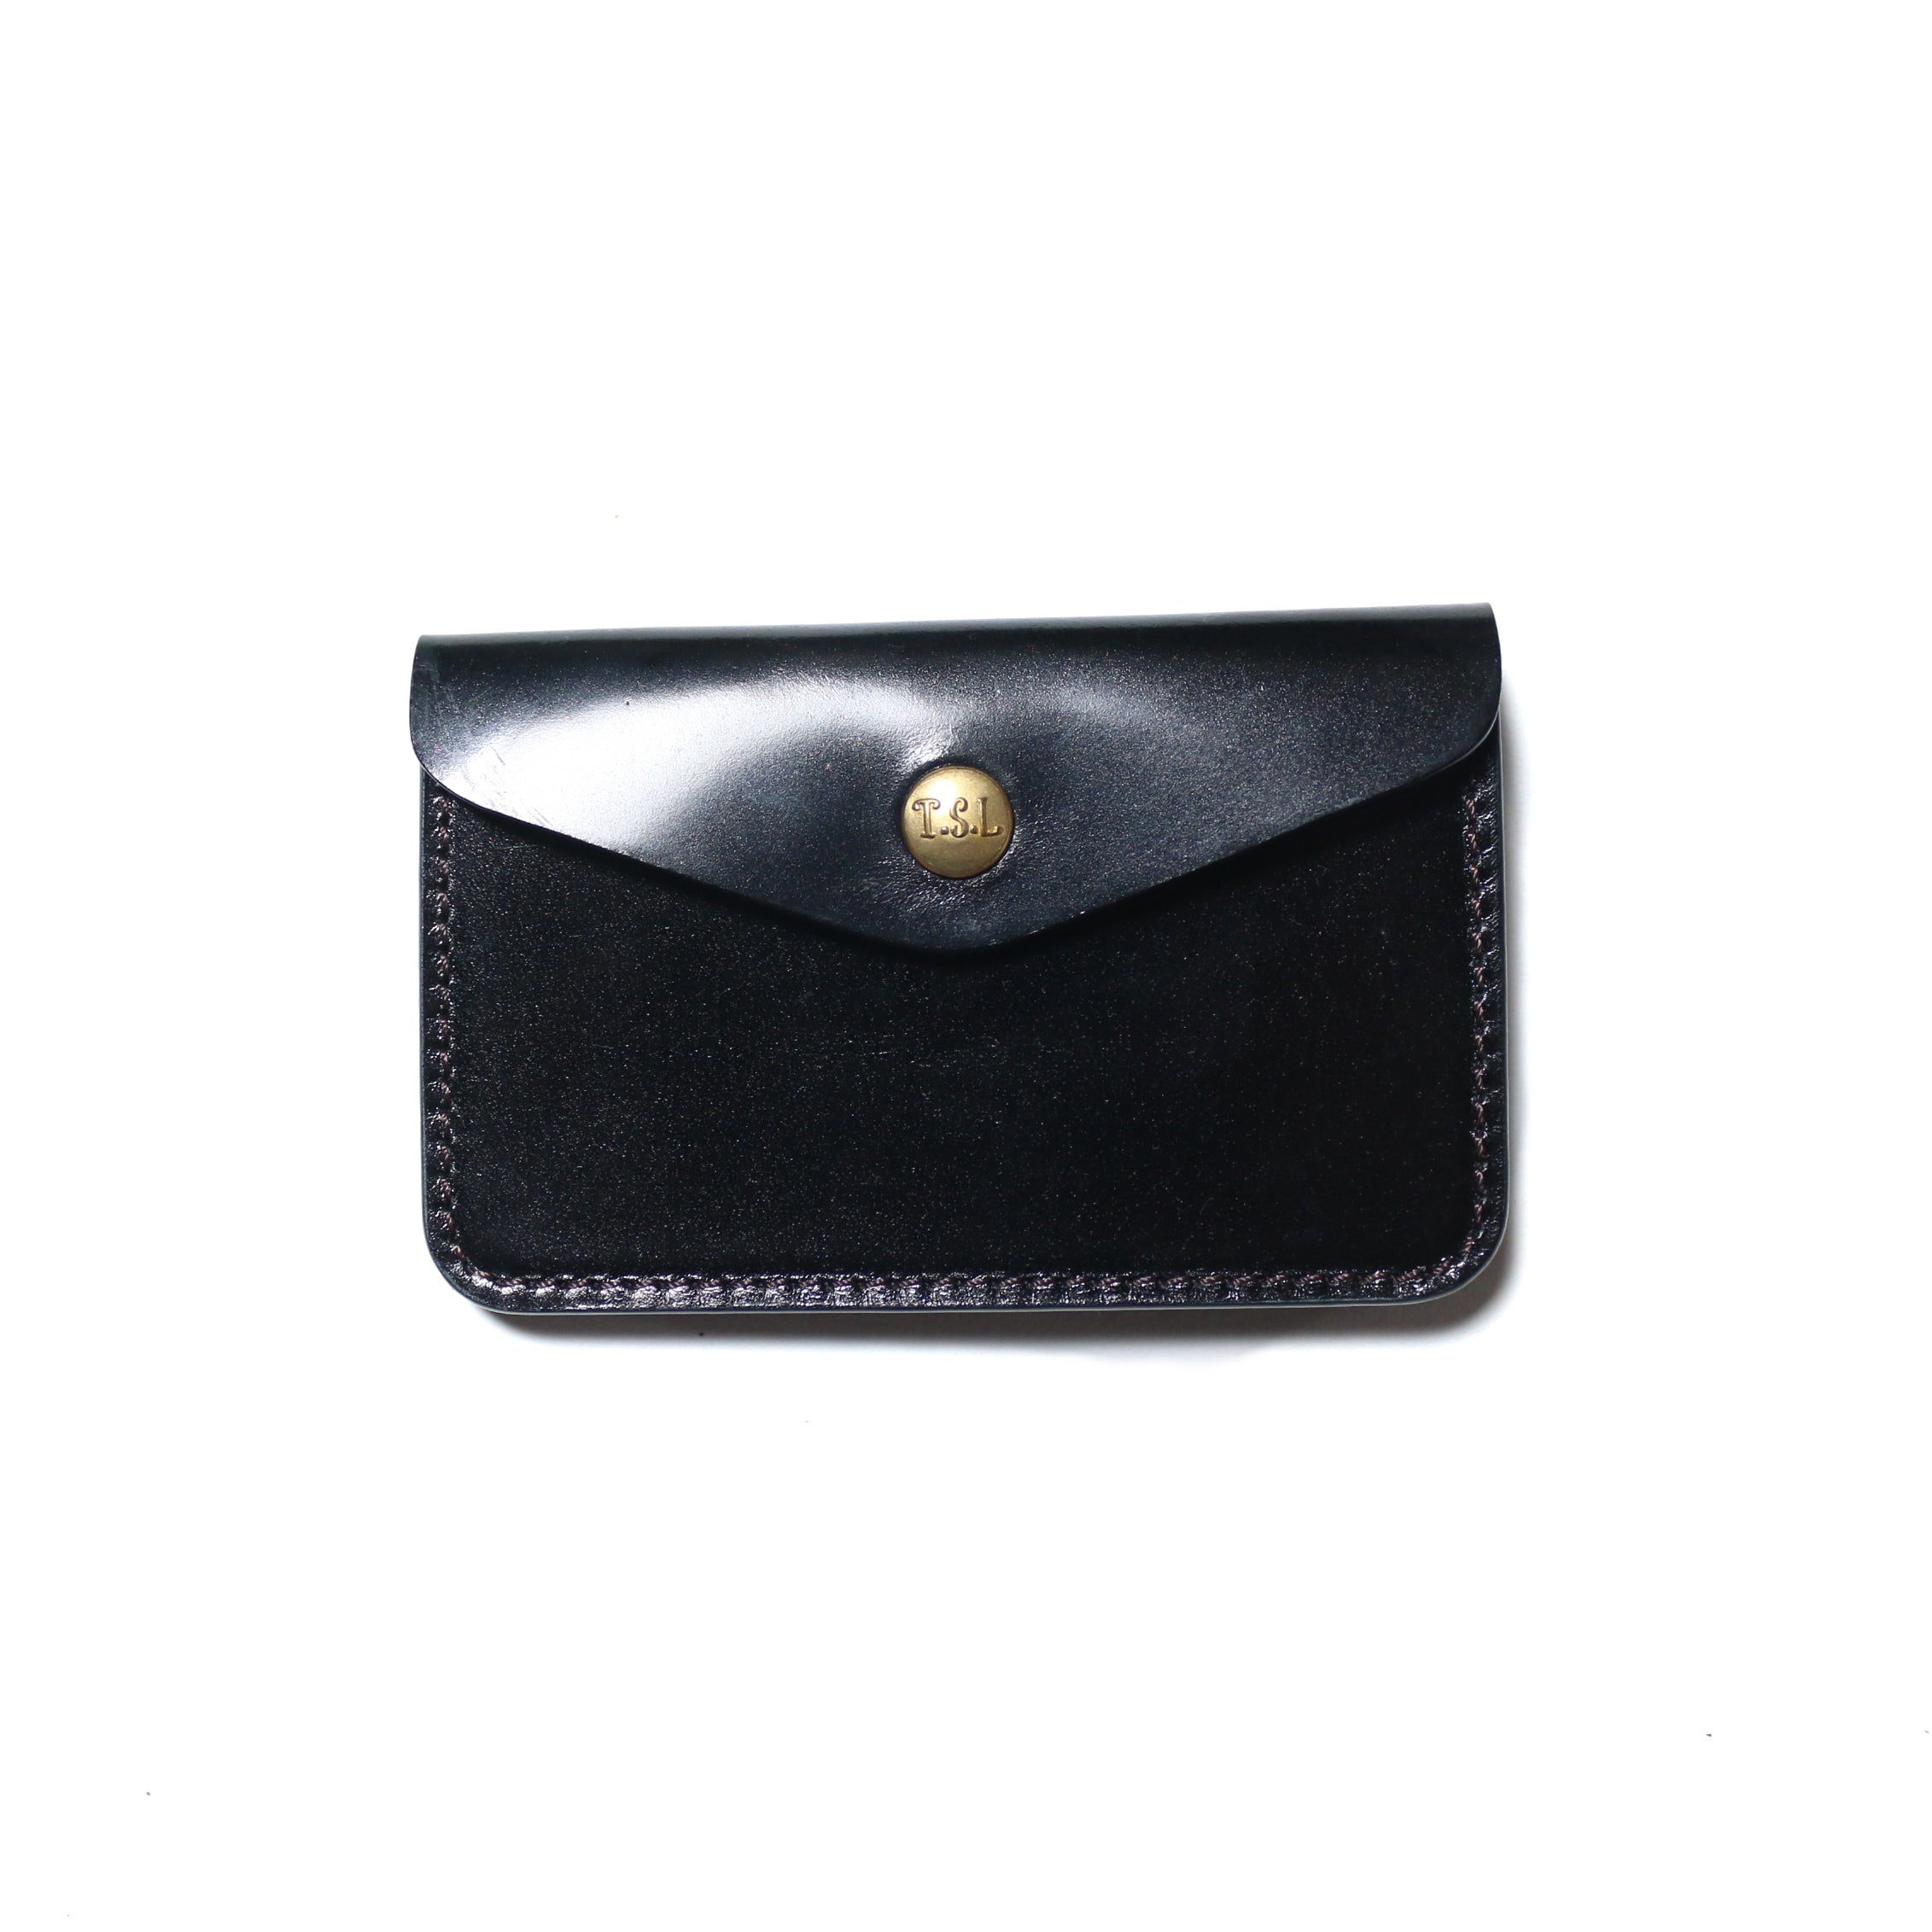 SL0250 cordovan  traveler's small purse